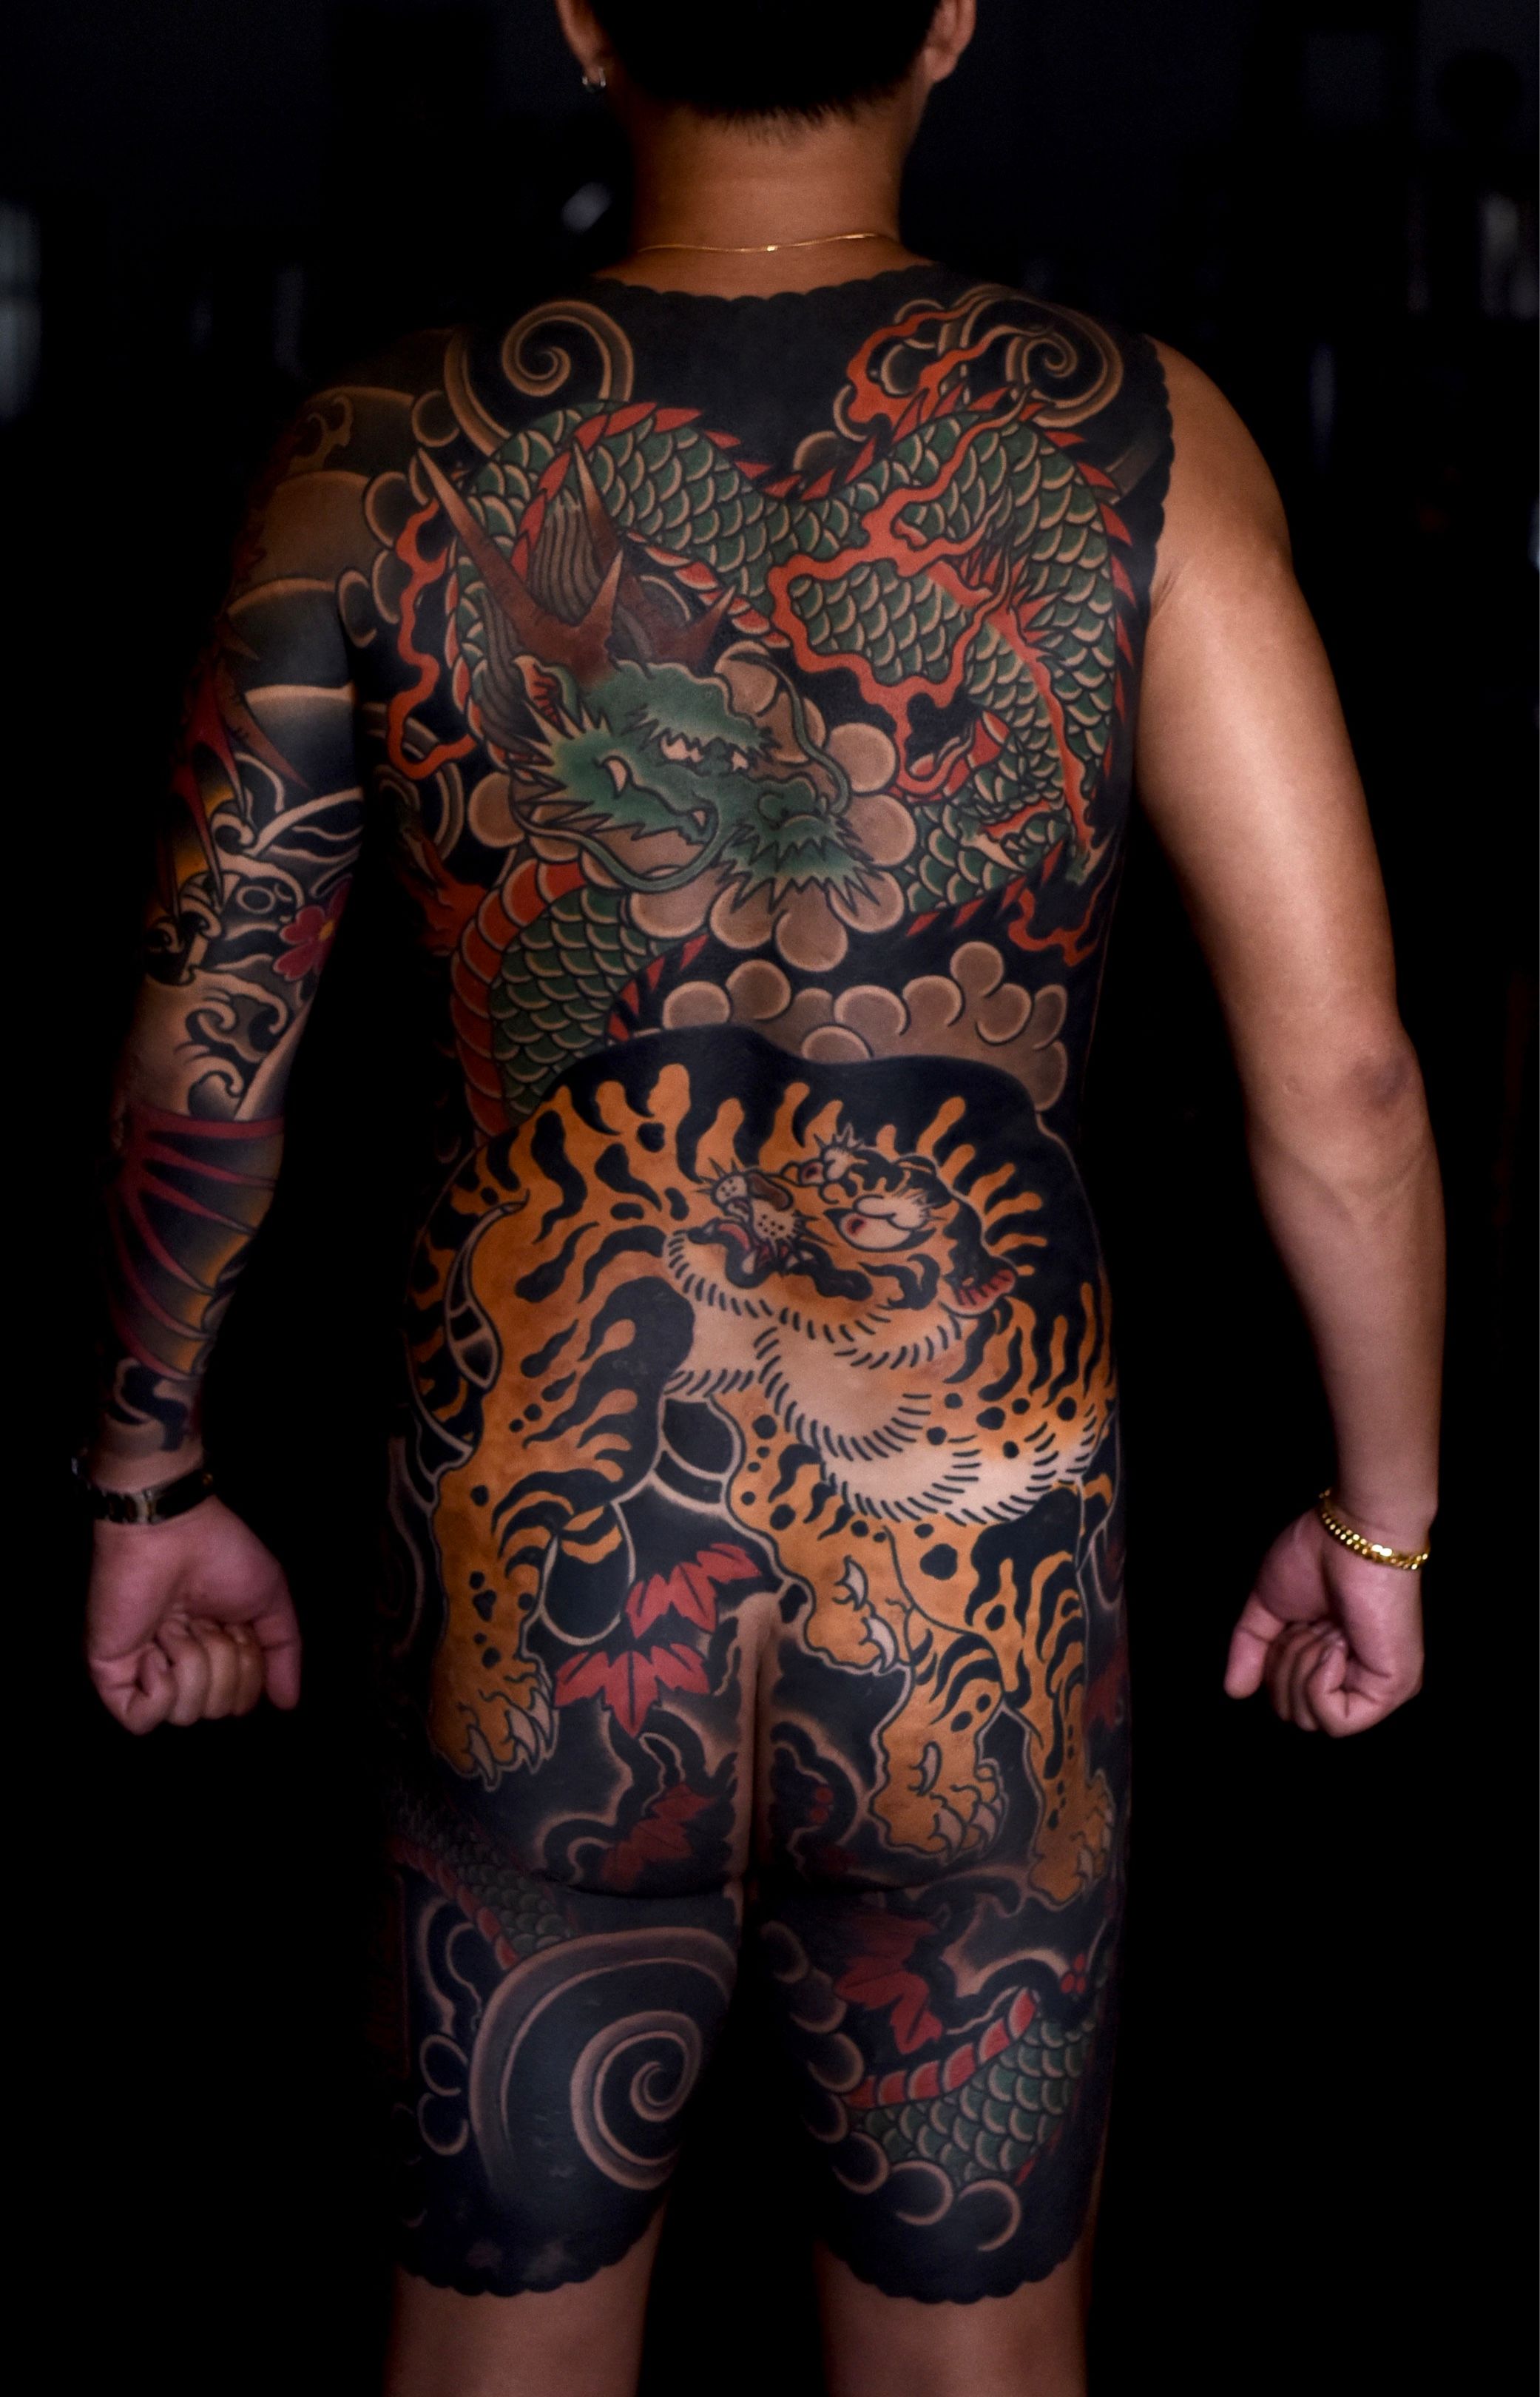 Large Semi-permanent Tattoo Back Tattoo Long Text Tattoo 2 Week Tattoo  Jagua Henna Sexy Gift Idea Spine Tattoo - Etsy Singapore